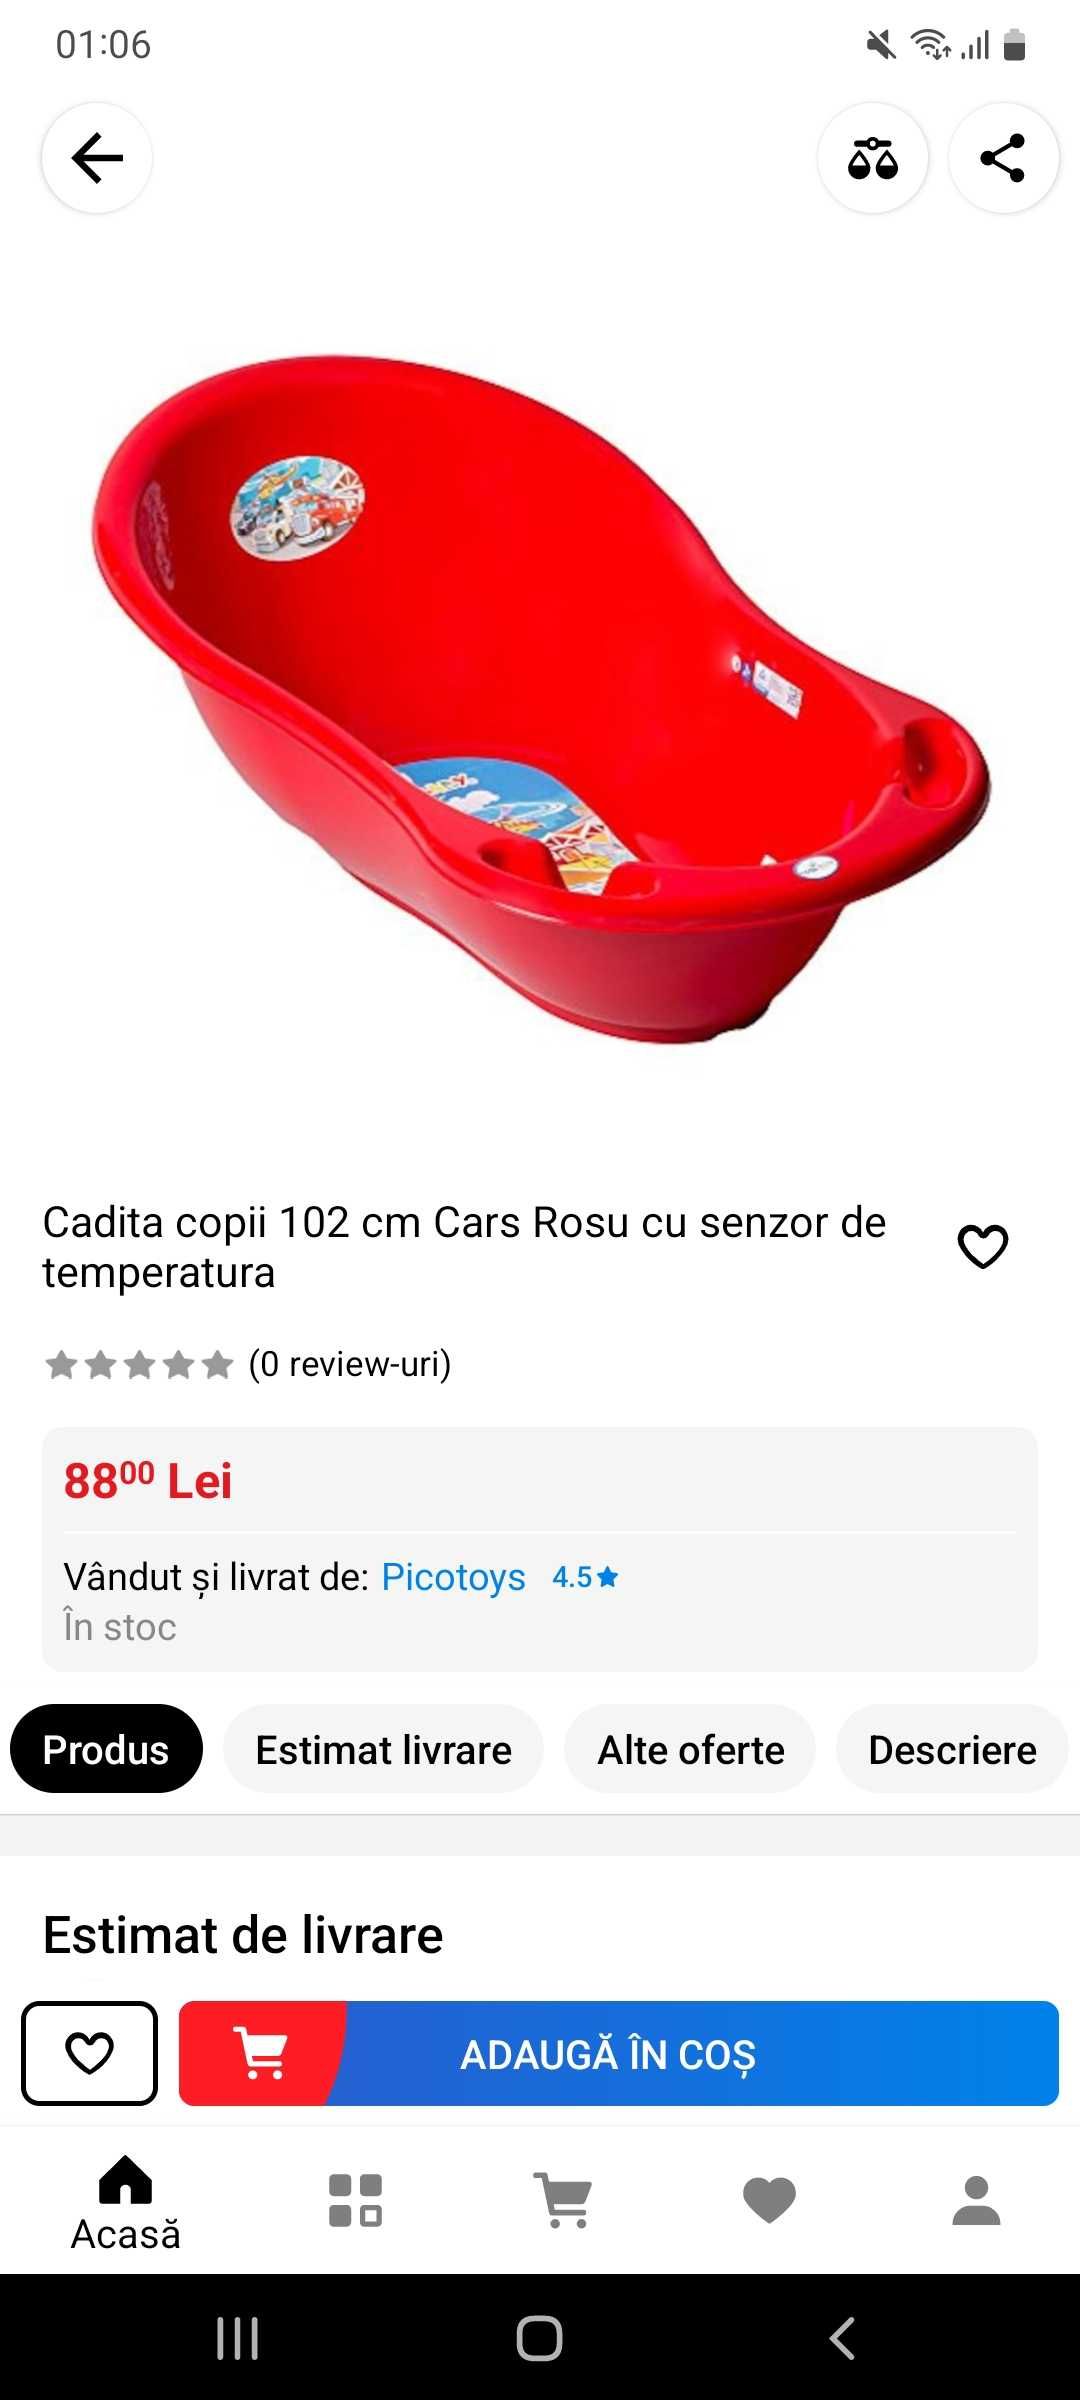 Cadita Red Cars cu senzor de temperatura